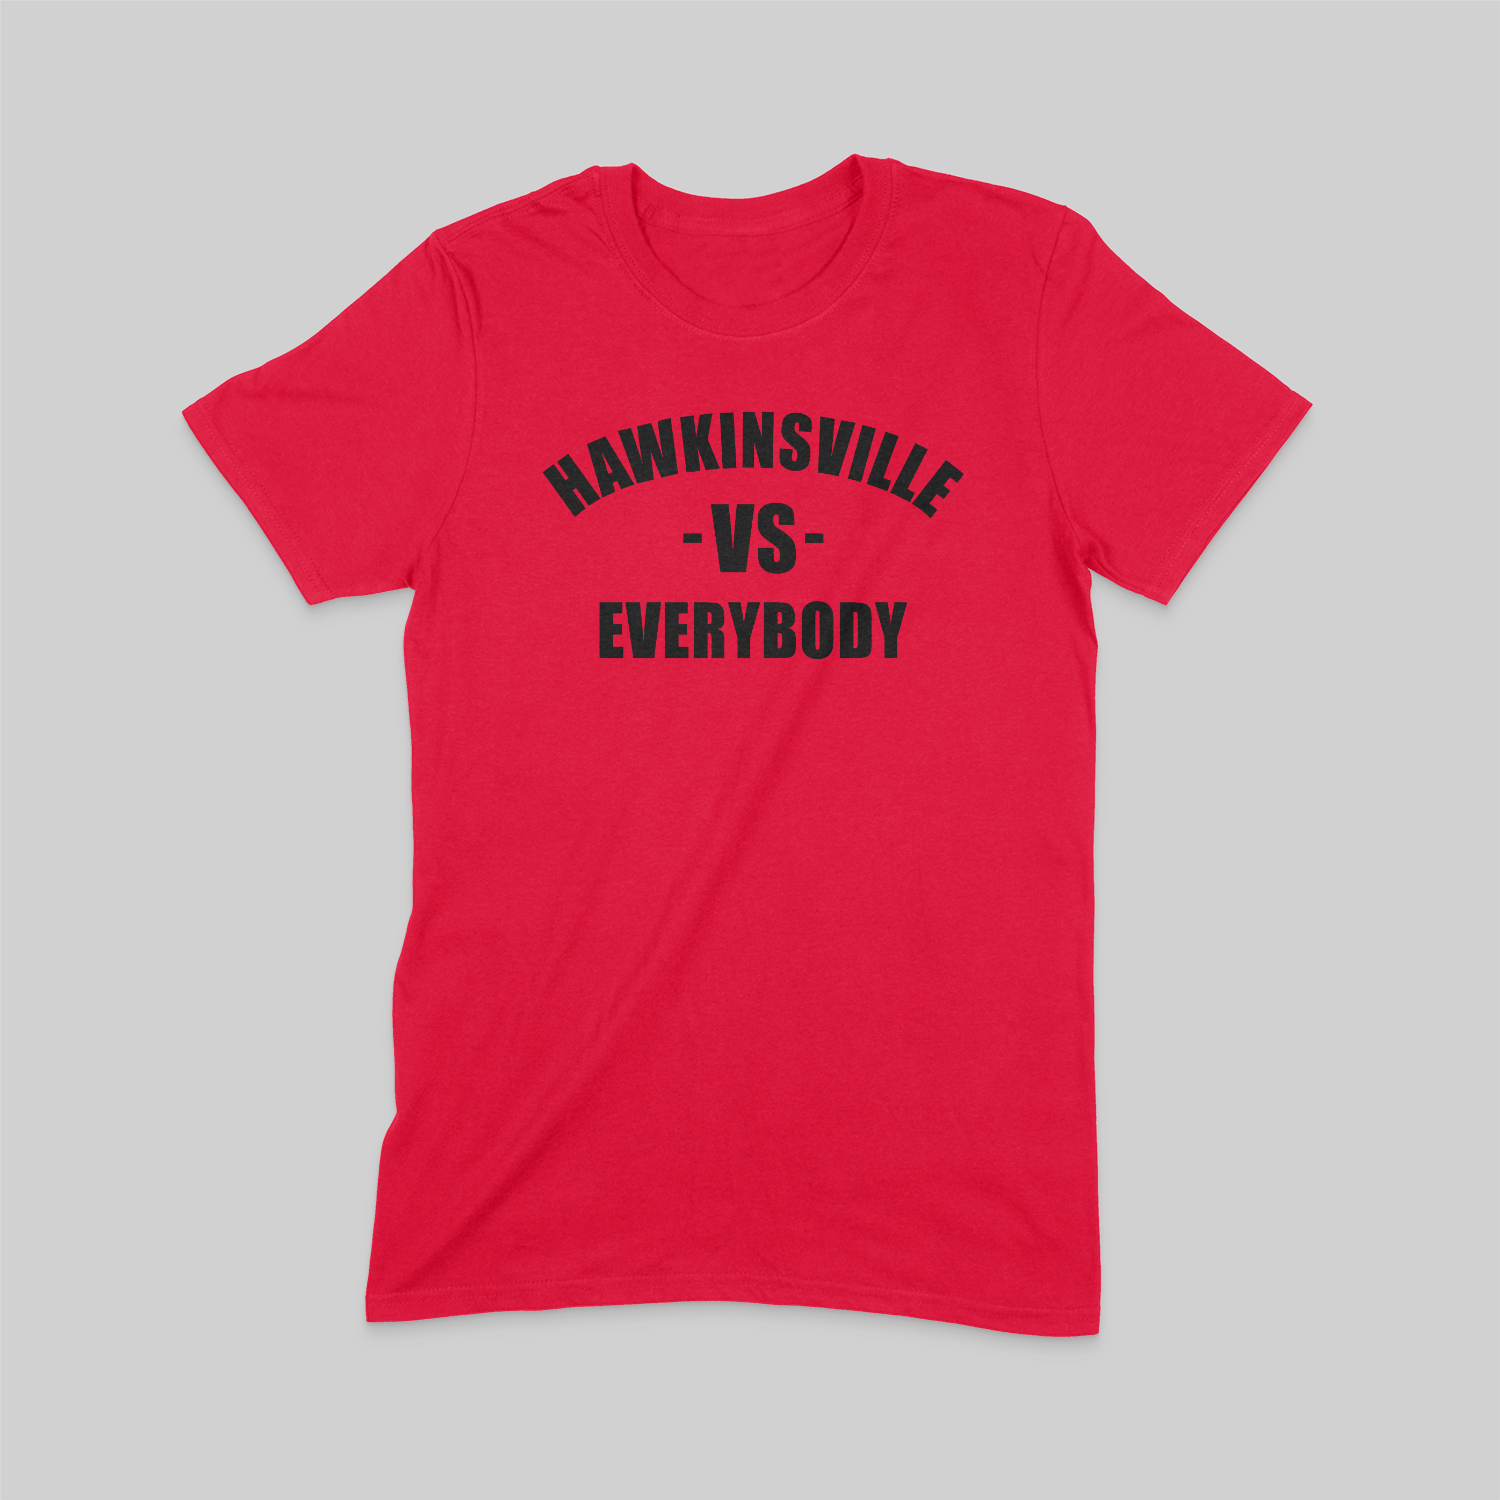 Red Hawkinsville-VS-Everybody Tee